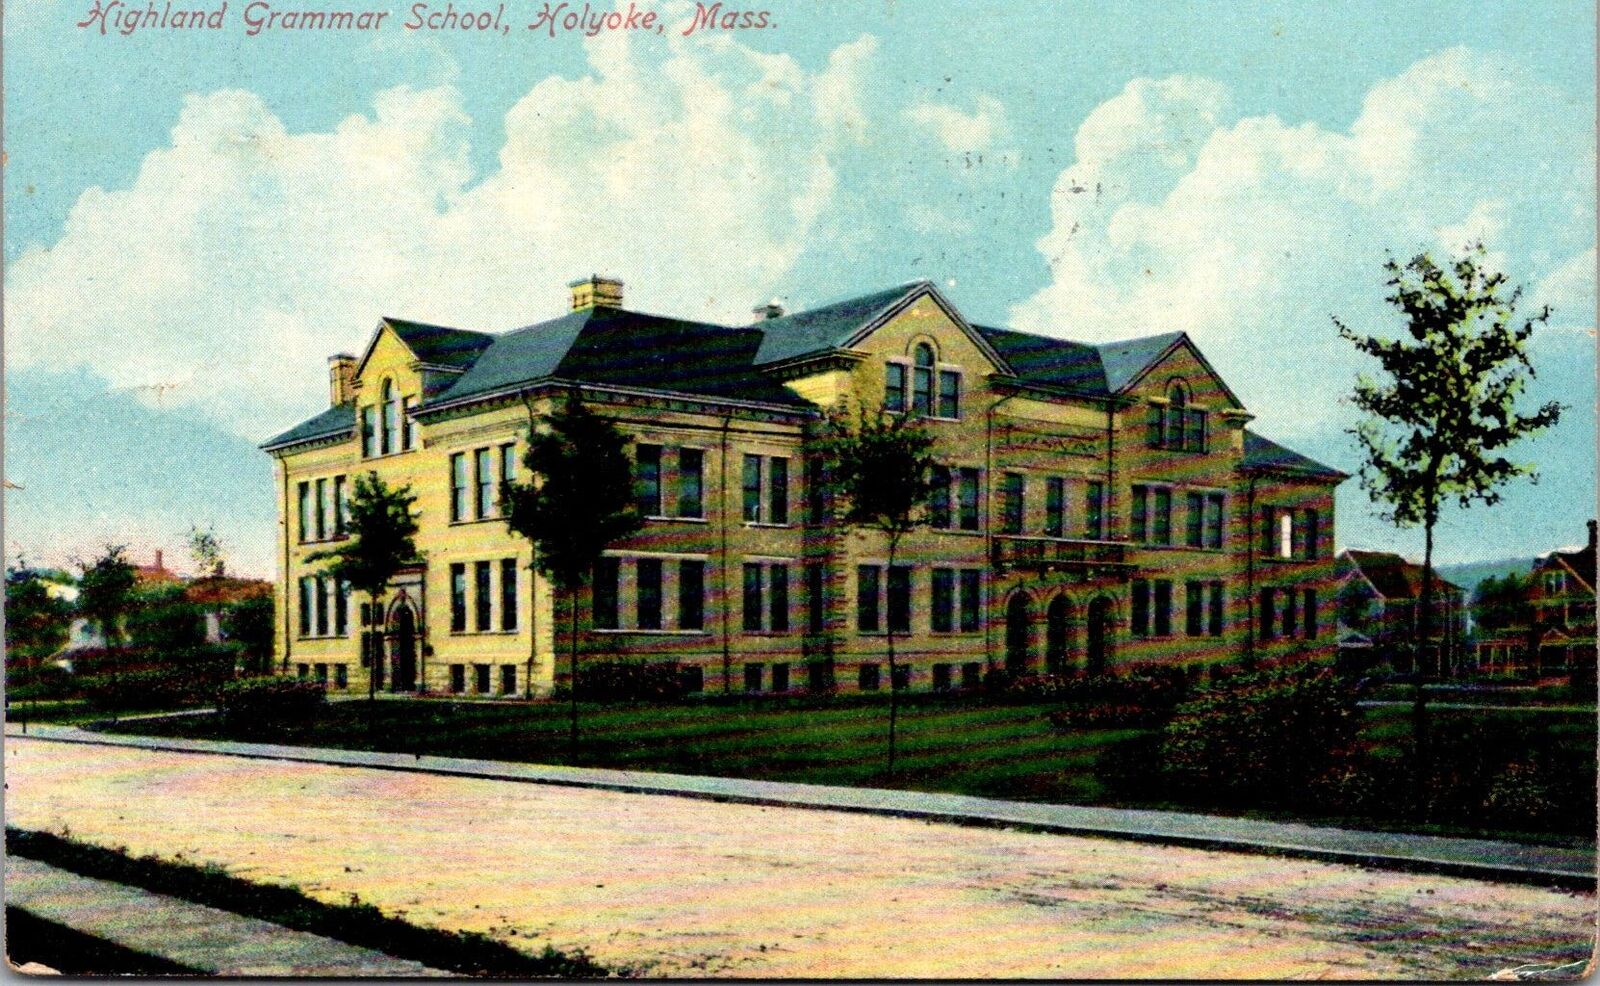 MA, Holyoke - Highland Grammar School - 1912 postcard - B11433